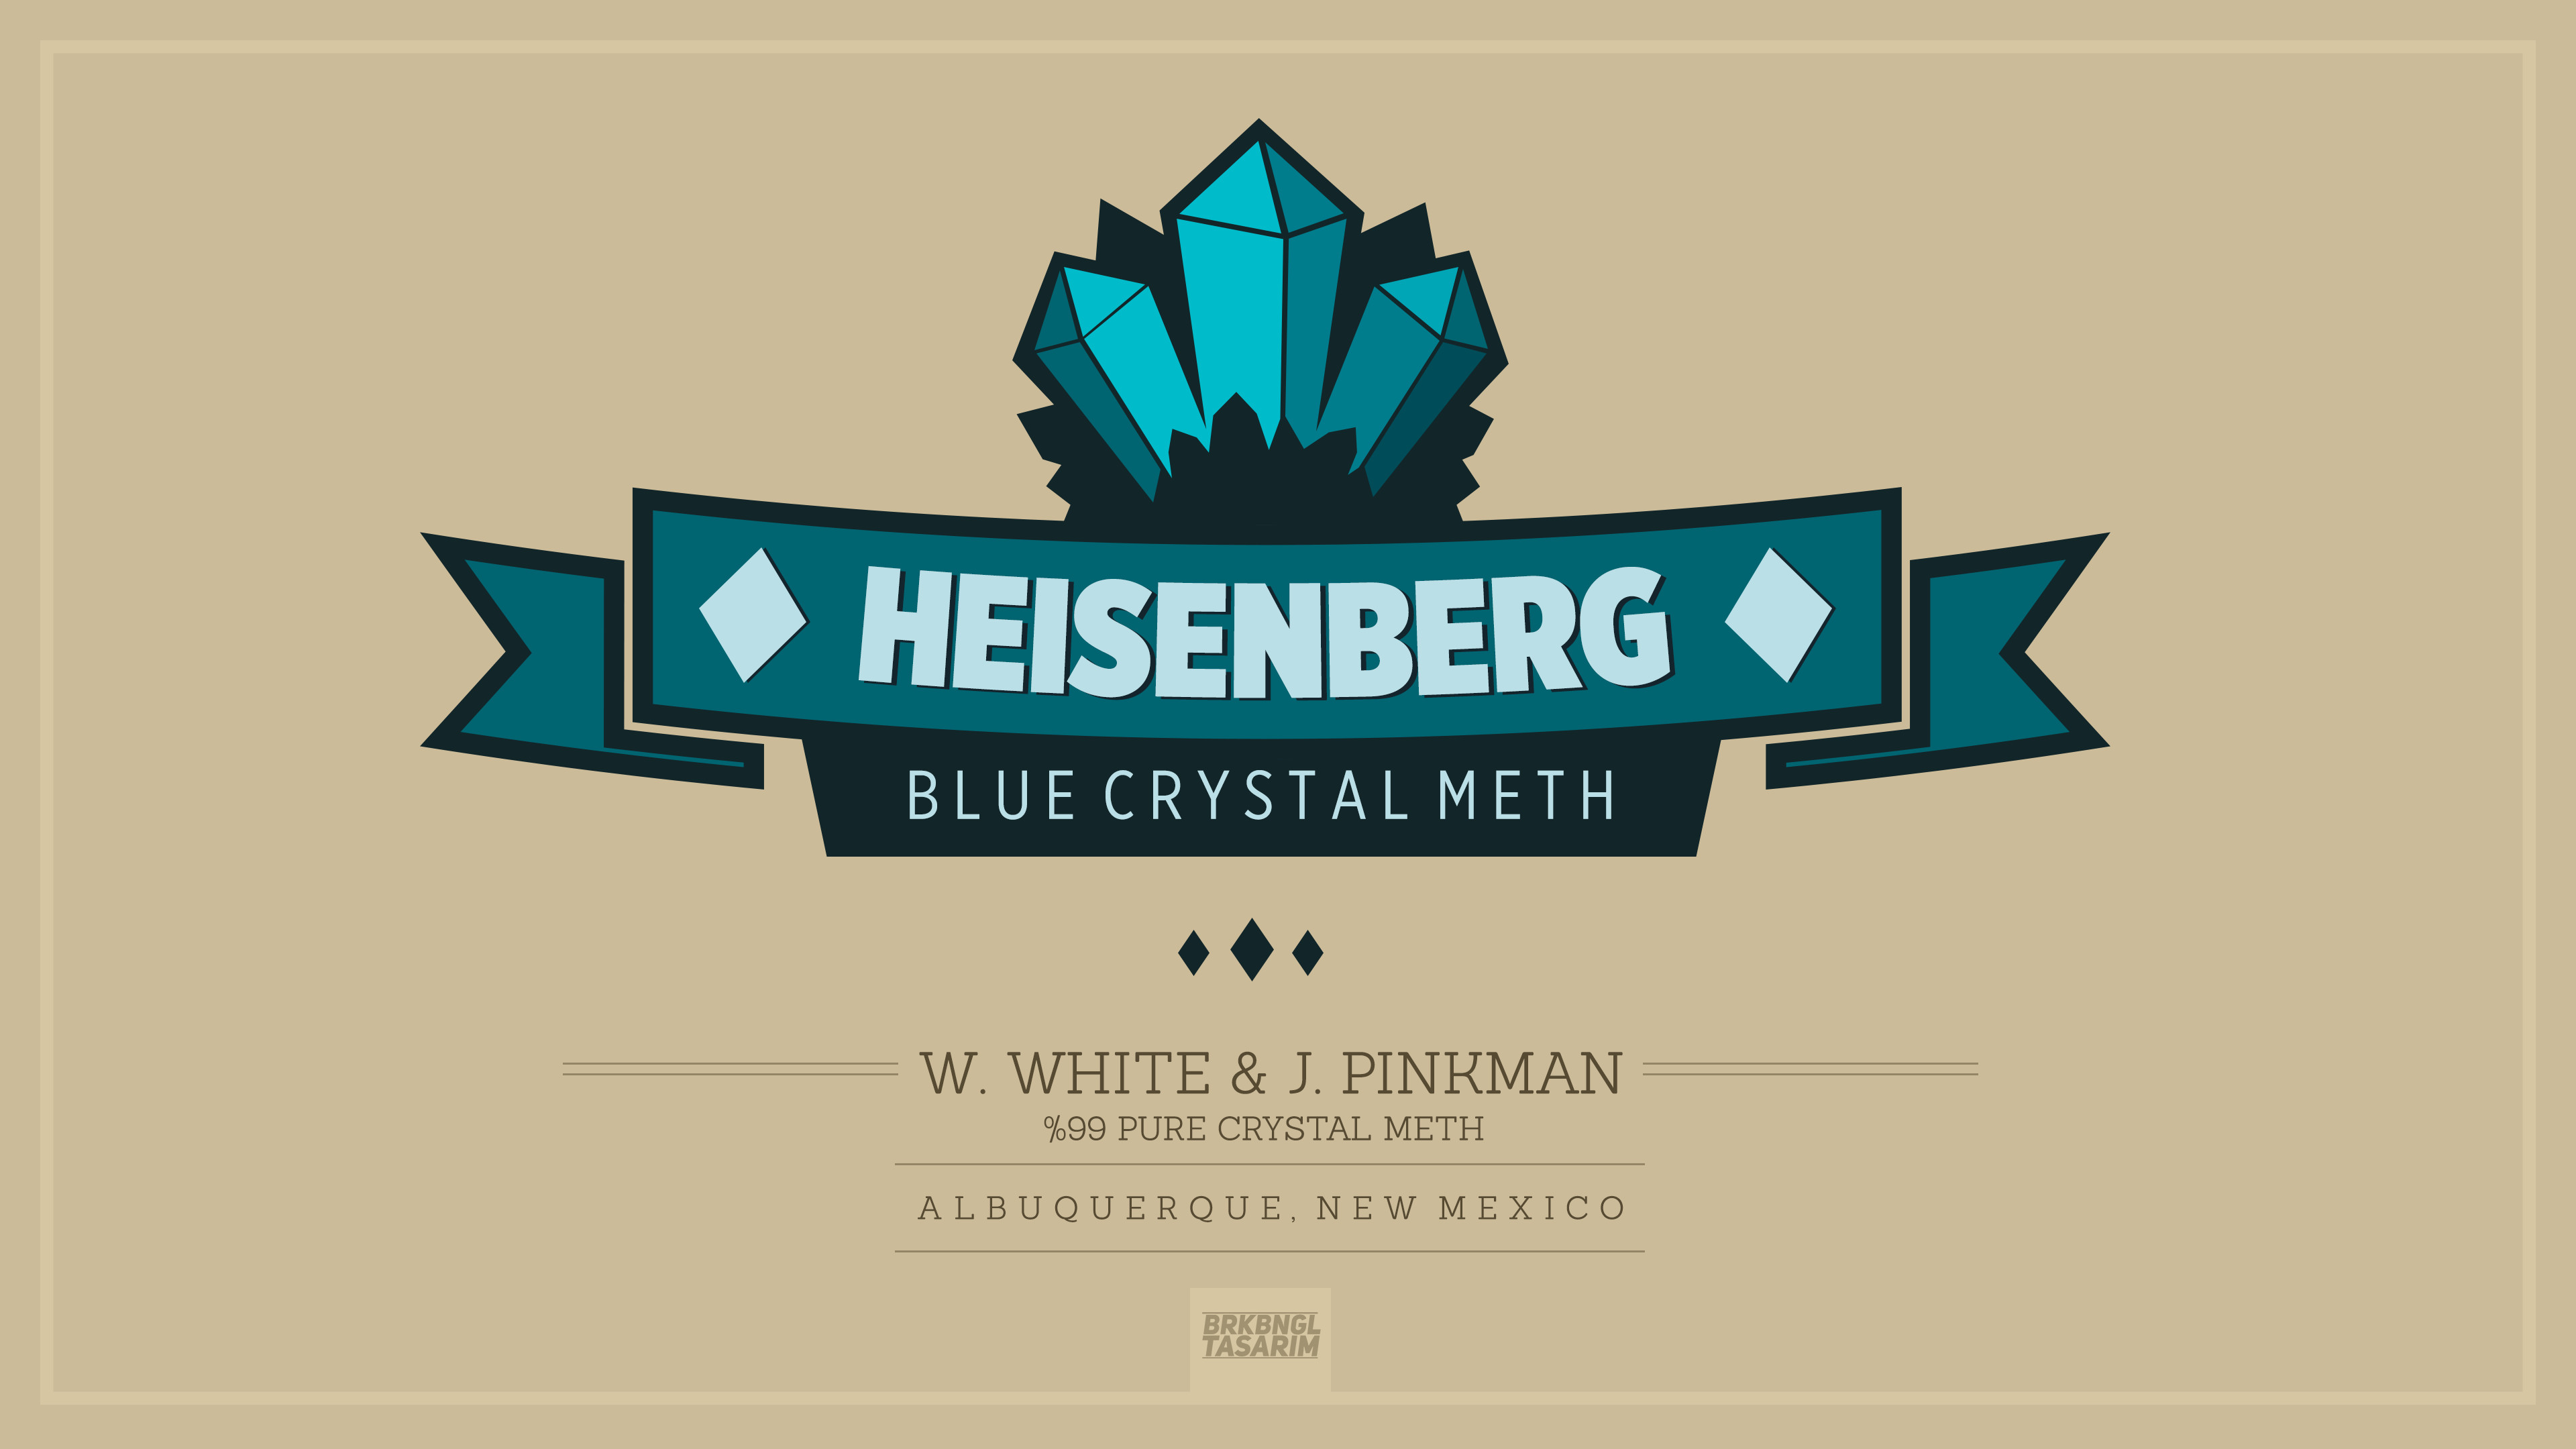 Heisenberg Blue Crystal Meth , HD Wallpaper & Backgrounds